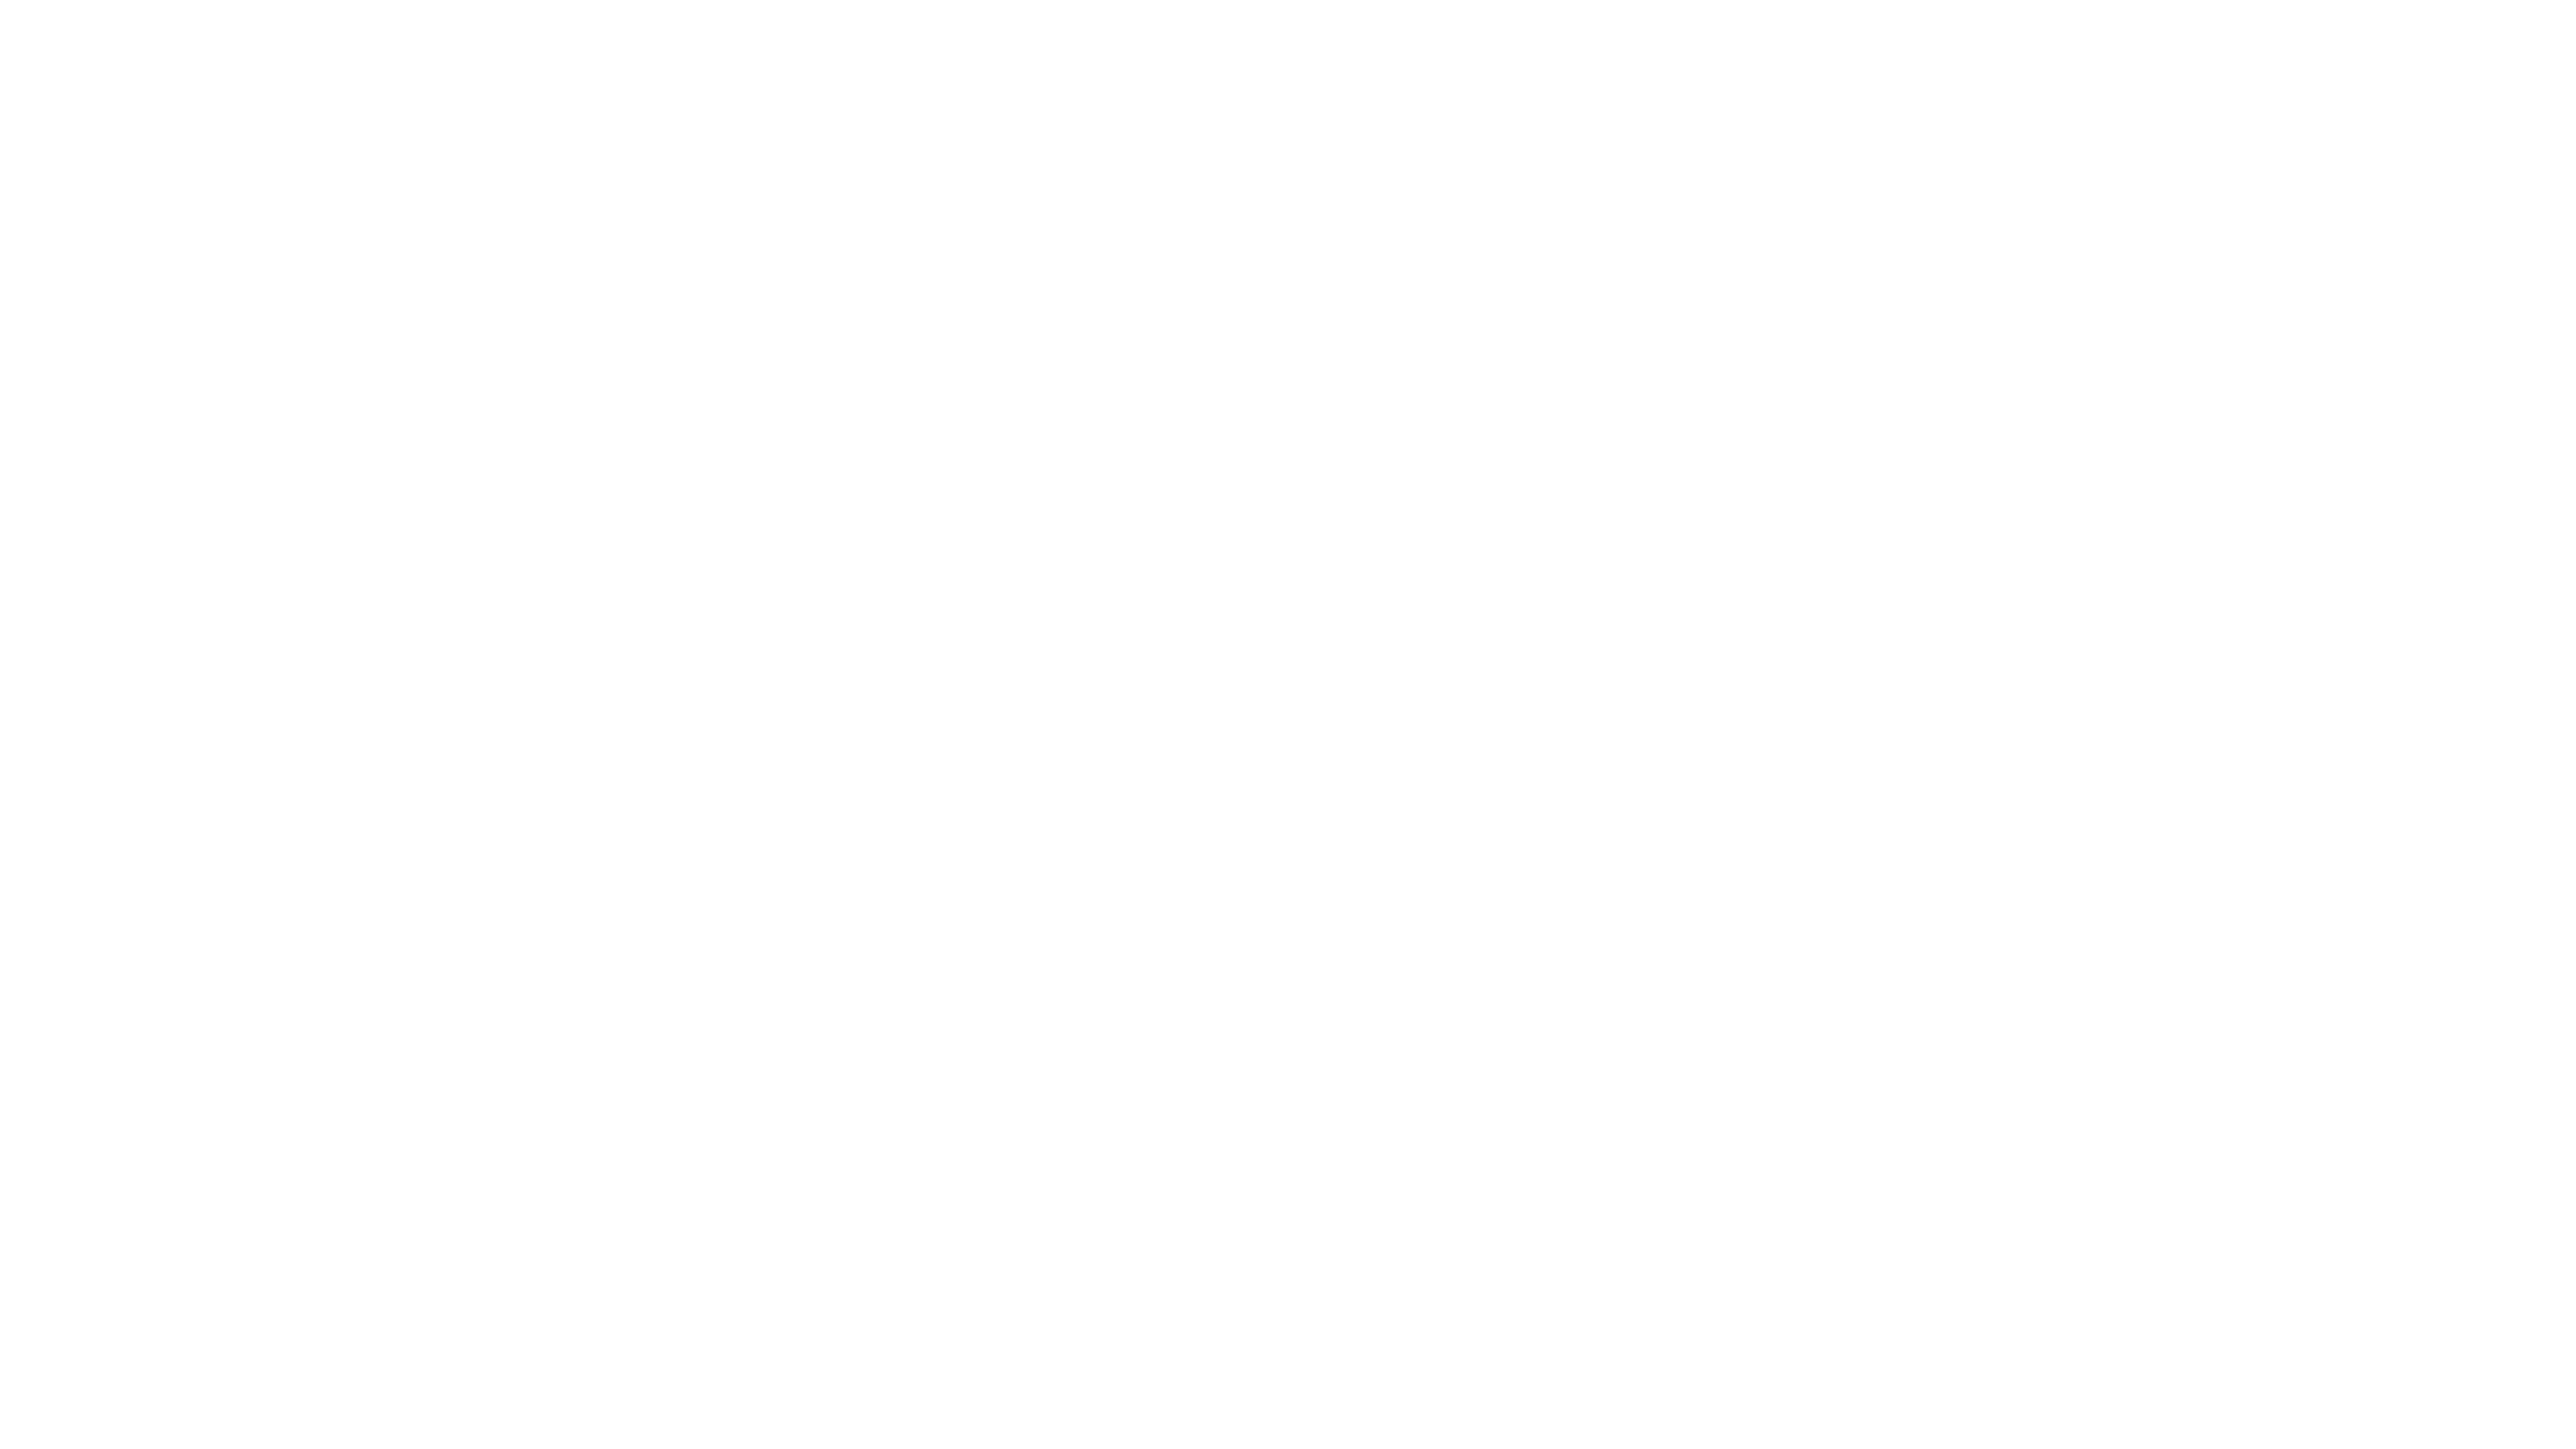 Bilardo, el doctor del futbol